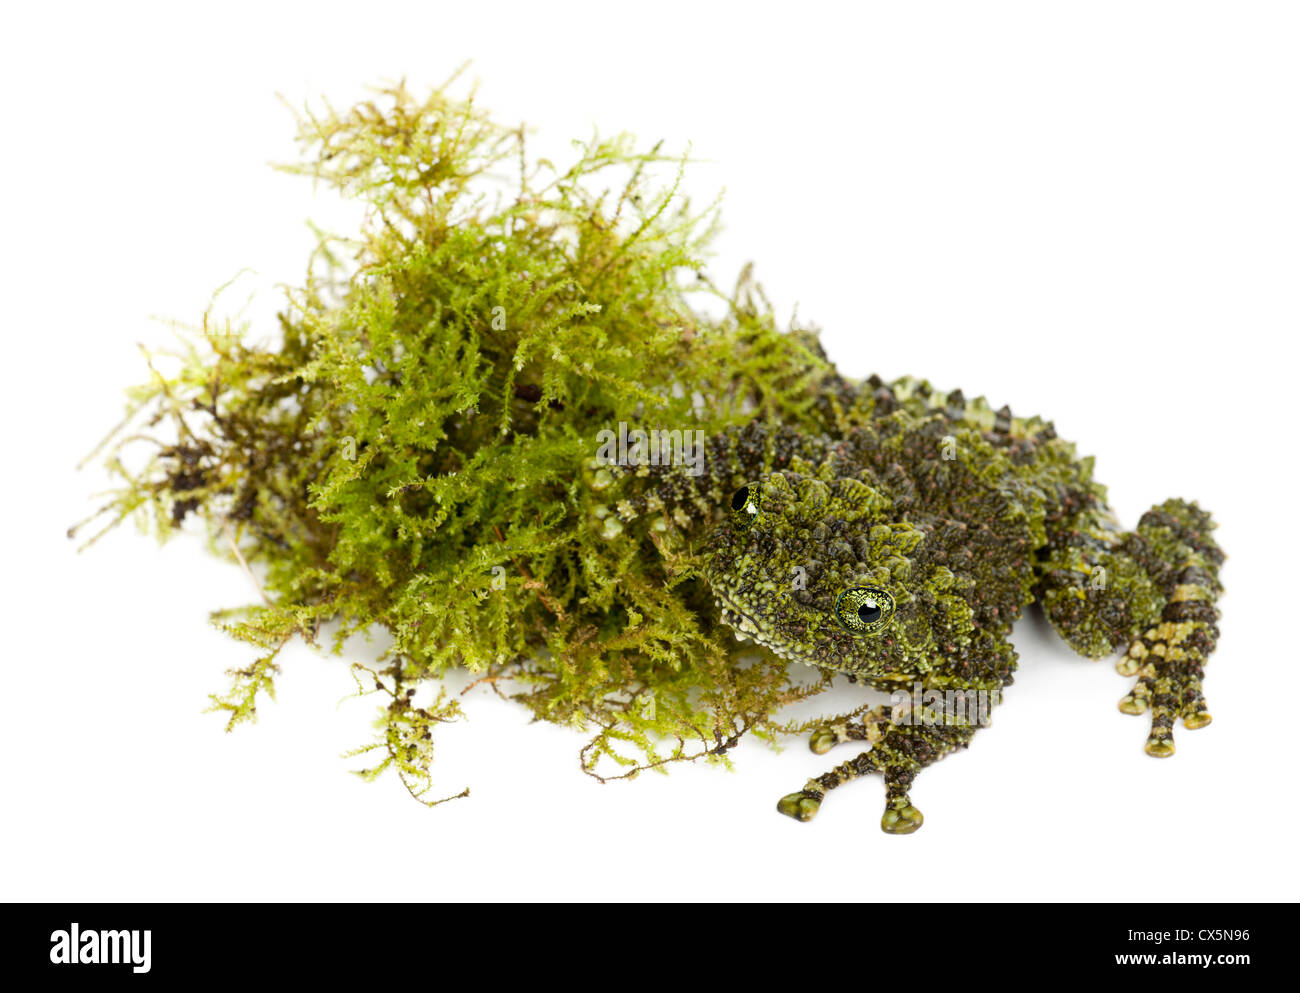 Rana di muschio, Theloderma corticale, noto anche come il vietnamita Mossy rana o Tonkin bug-eyed Frog, ritratto contro uno sfondo bianco Foto Stock